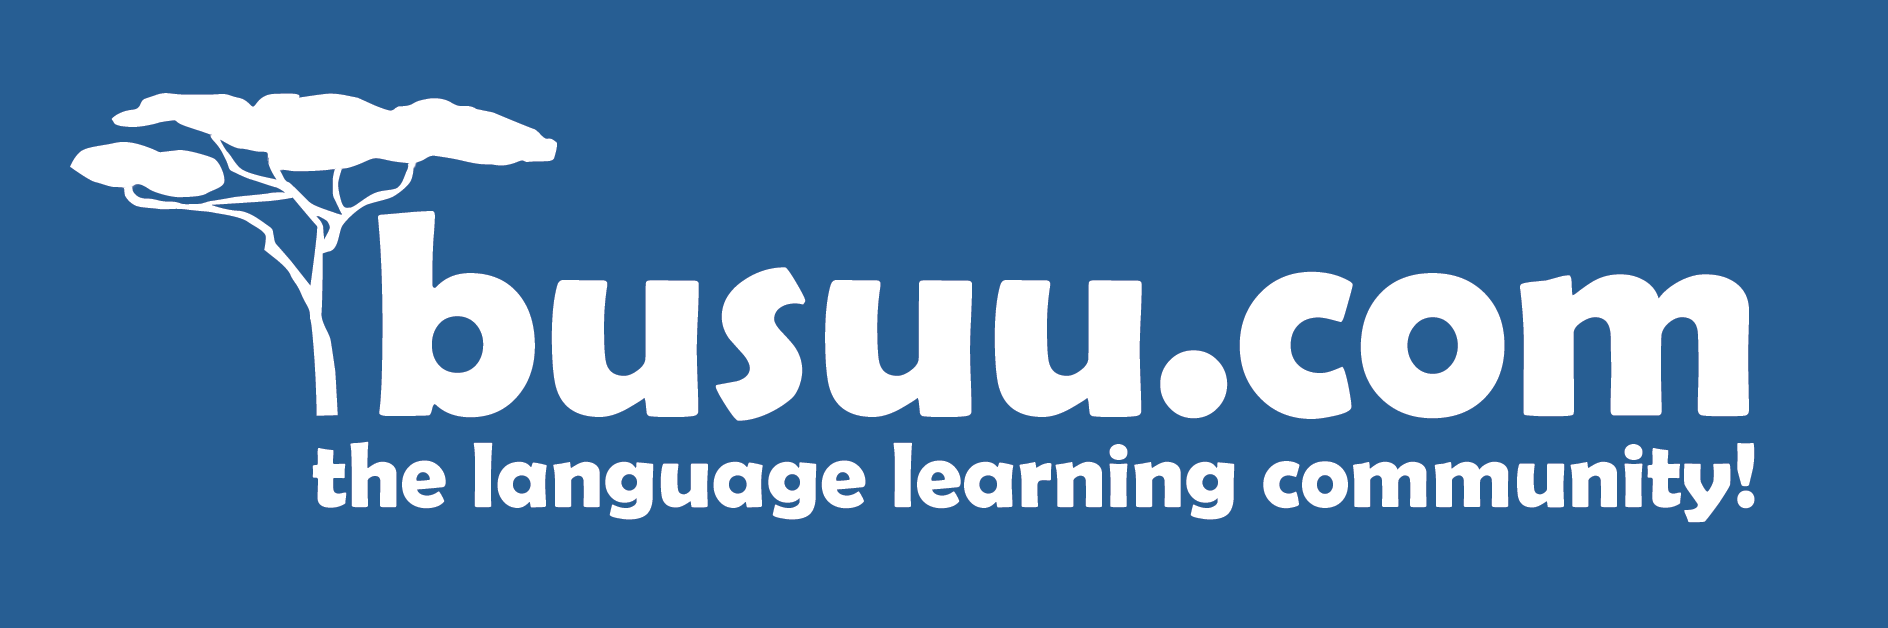 سه App فوق العاده برای یادگیری زبان های خارجی